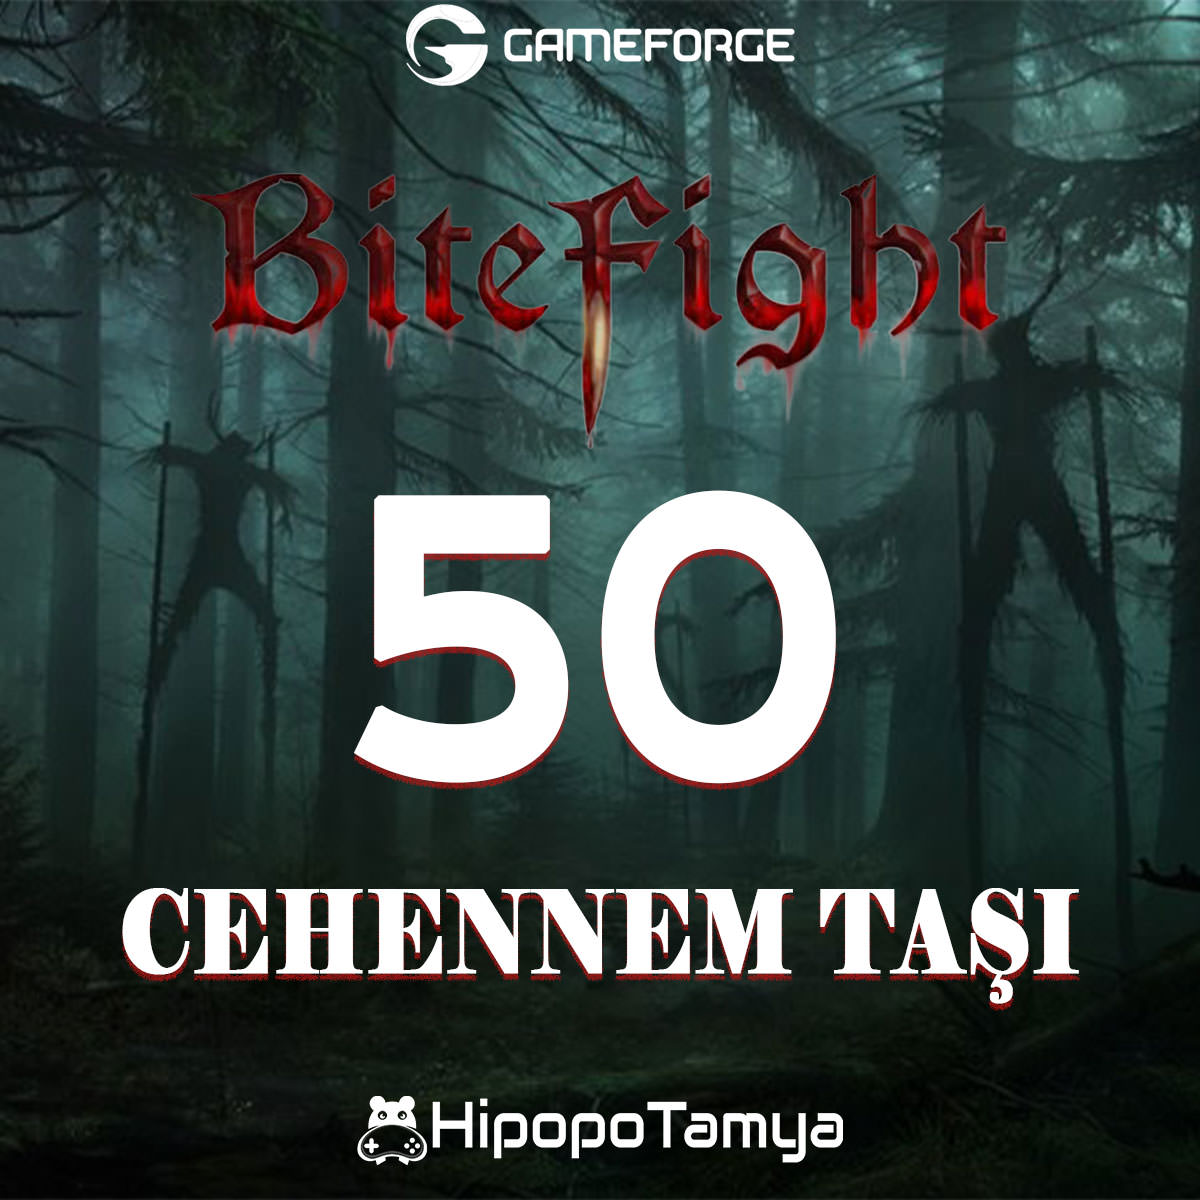 Bitefight 50 Cehennem Taşı